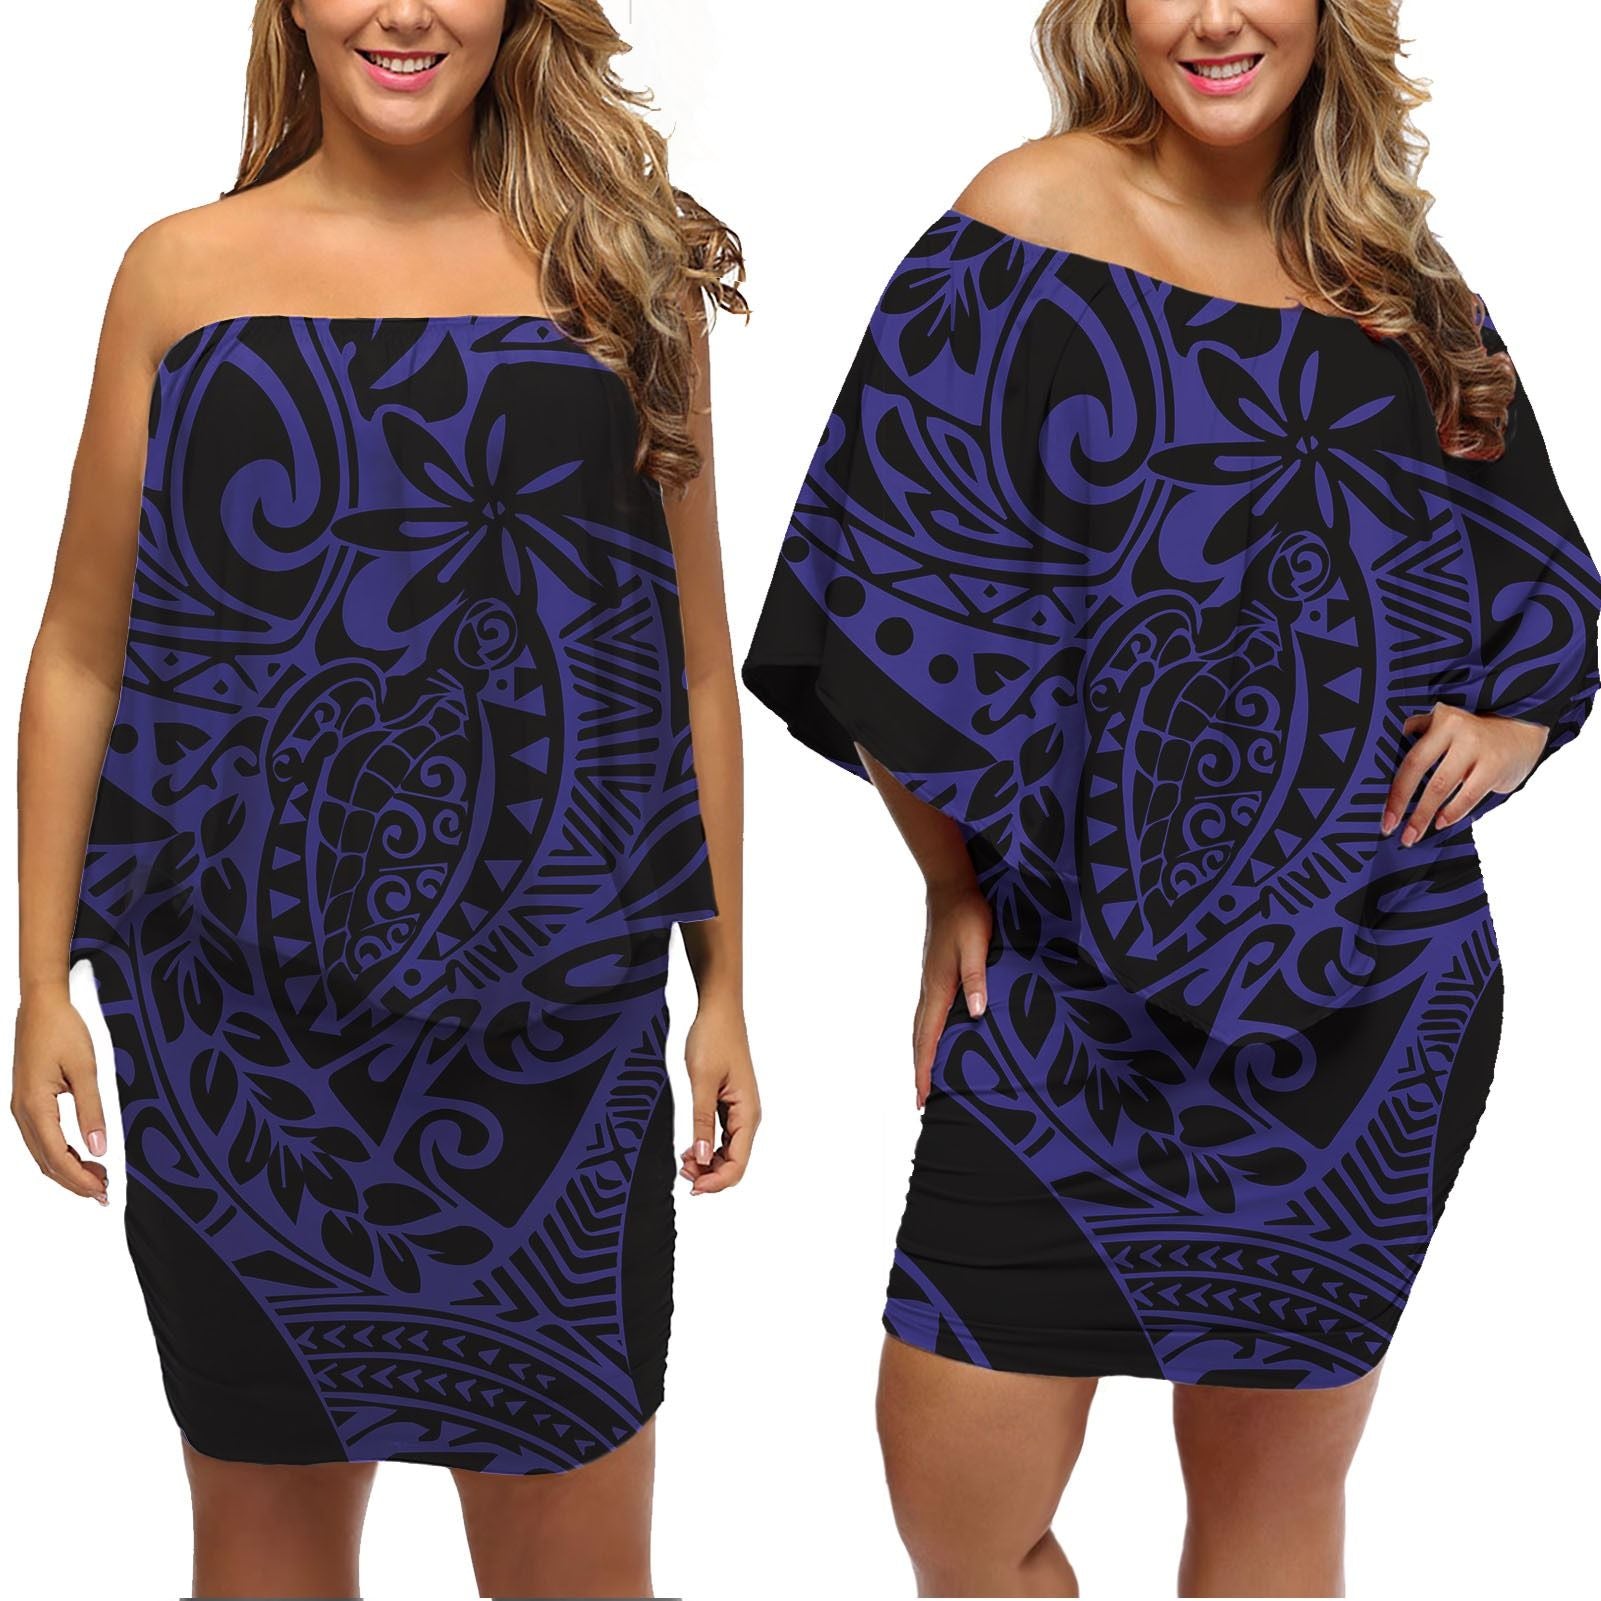 polynesian-pride-dress-turtle-kakau-polynesia-purple-off-shoulder-short-dress